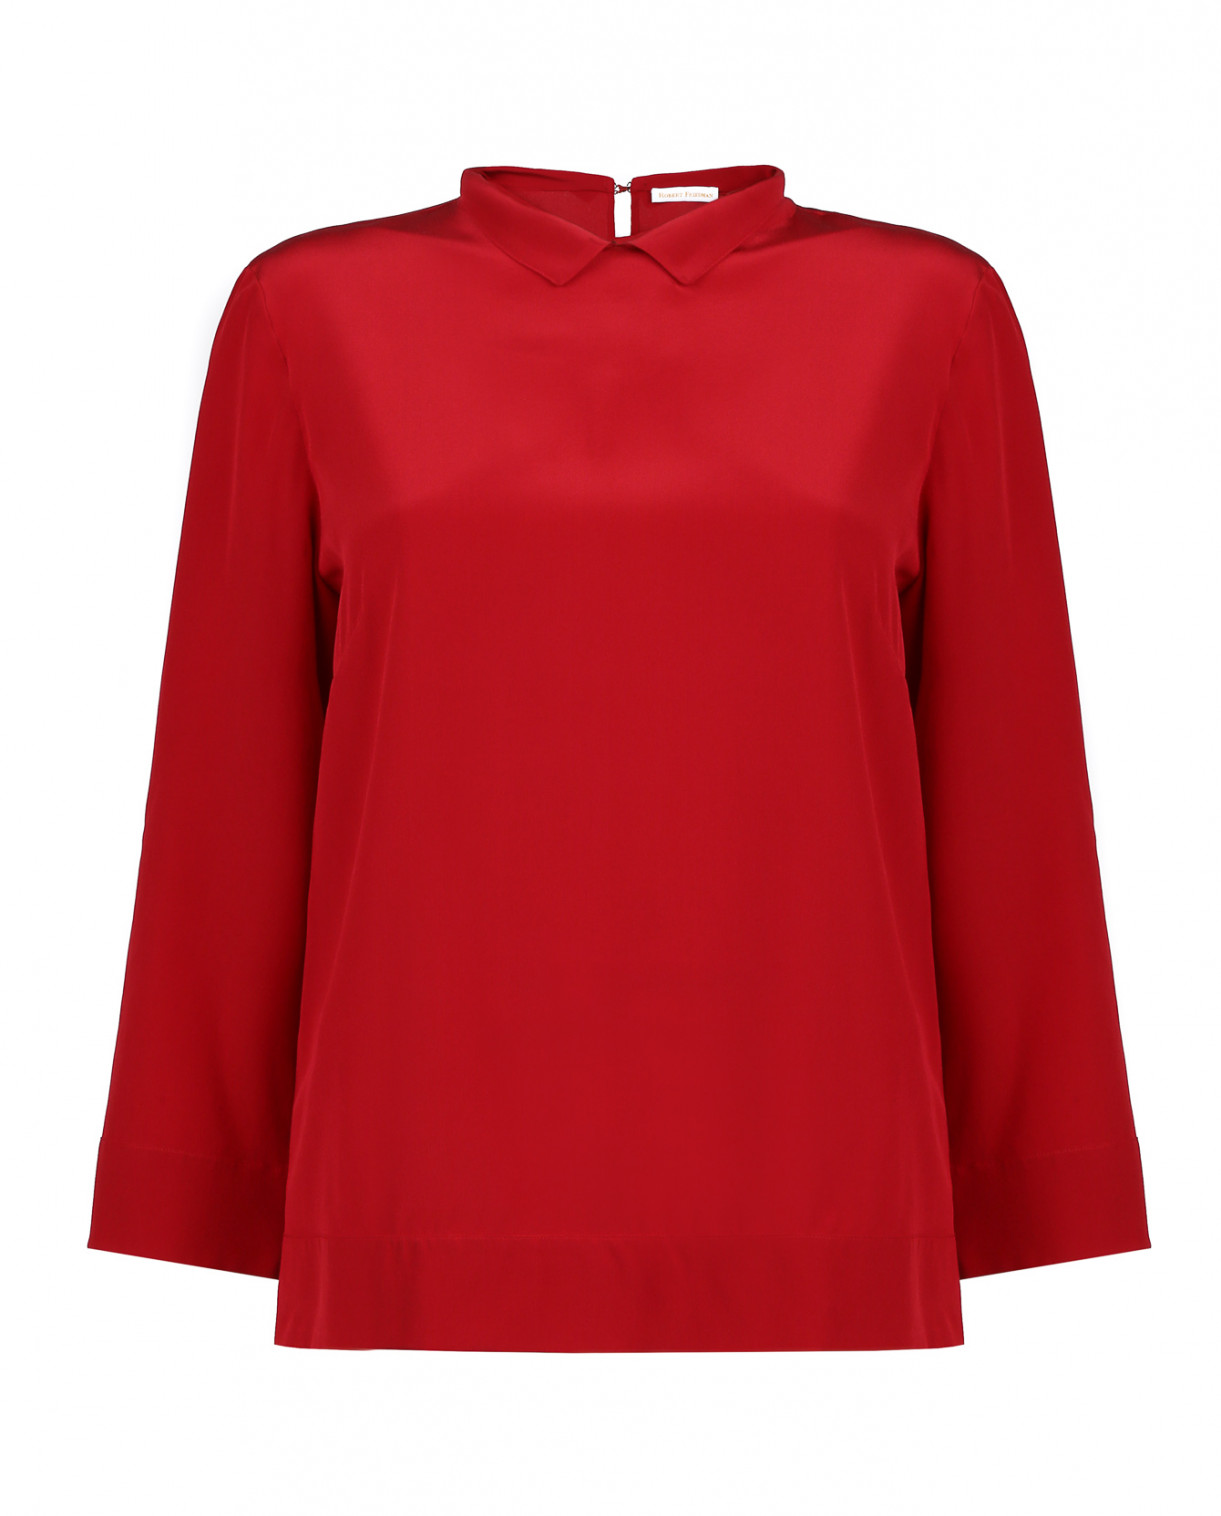 Свободная блуза с круглым воротом Robert Friedman  –  Общий вид  – Цвет:  Красный